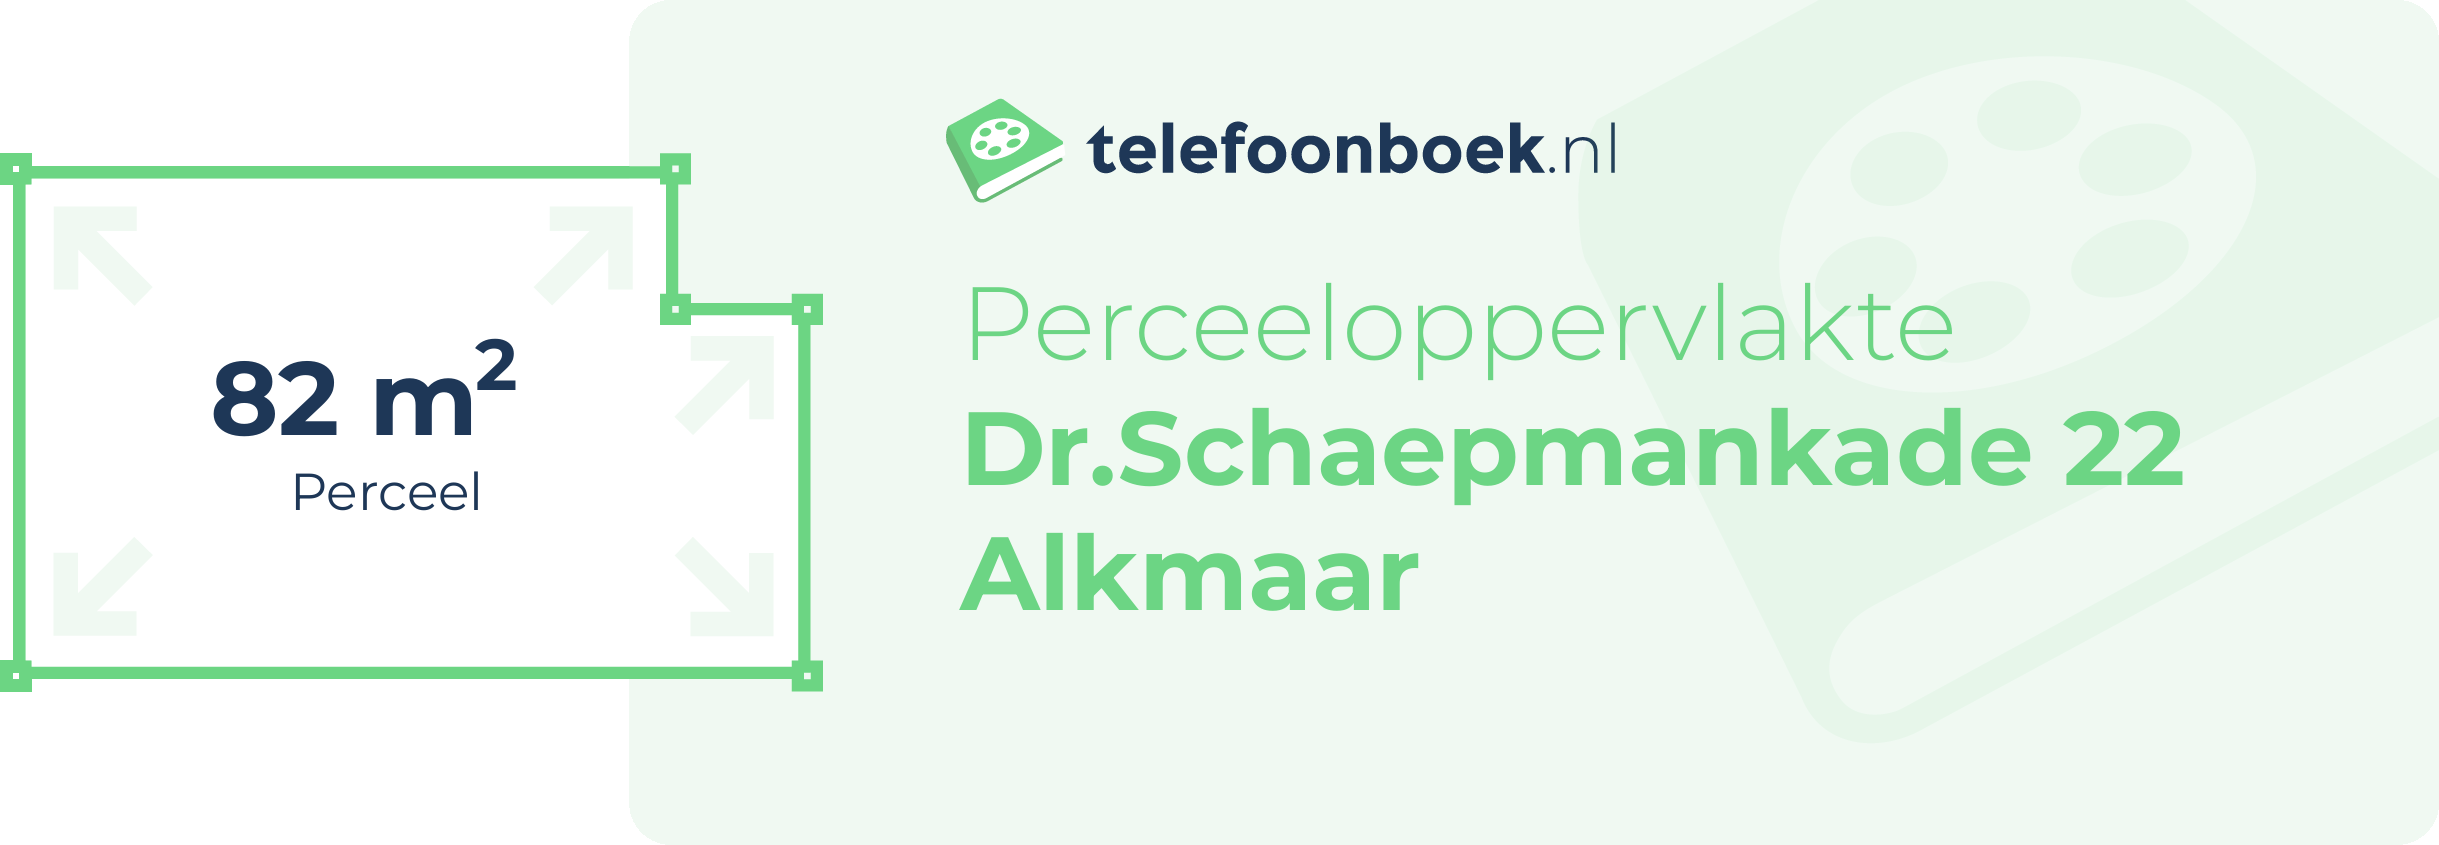 Perceeloppervlakte Dr.Schaepmankade 22 Alkmaar